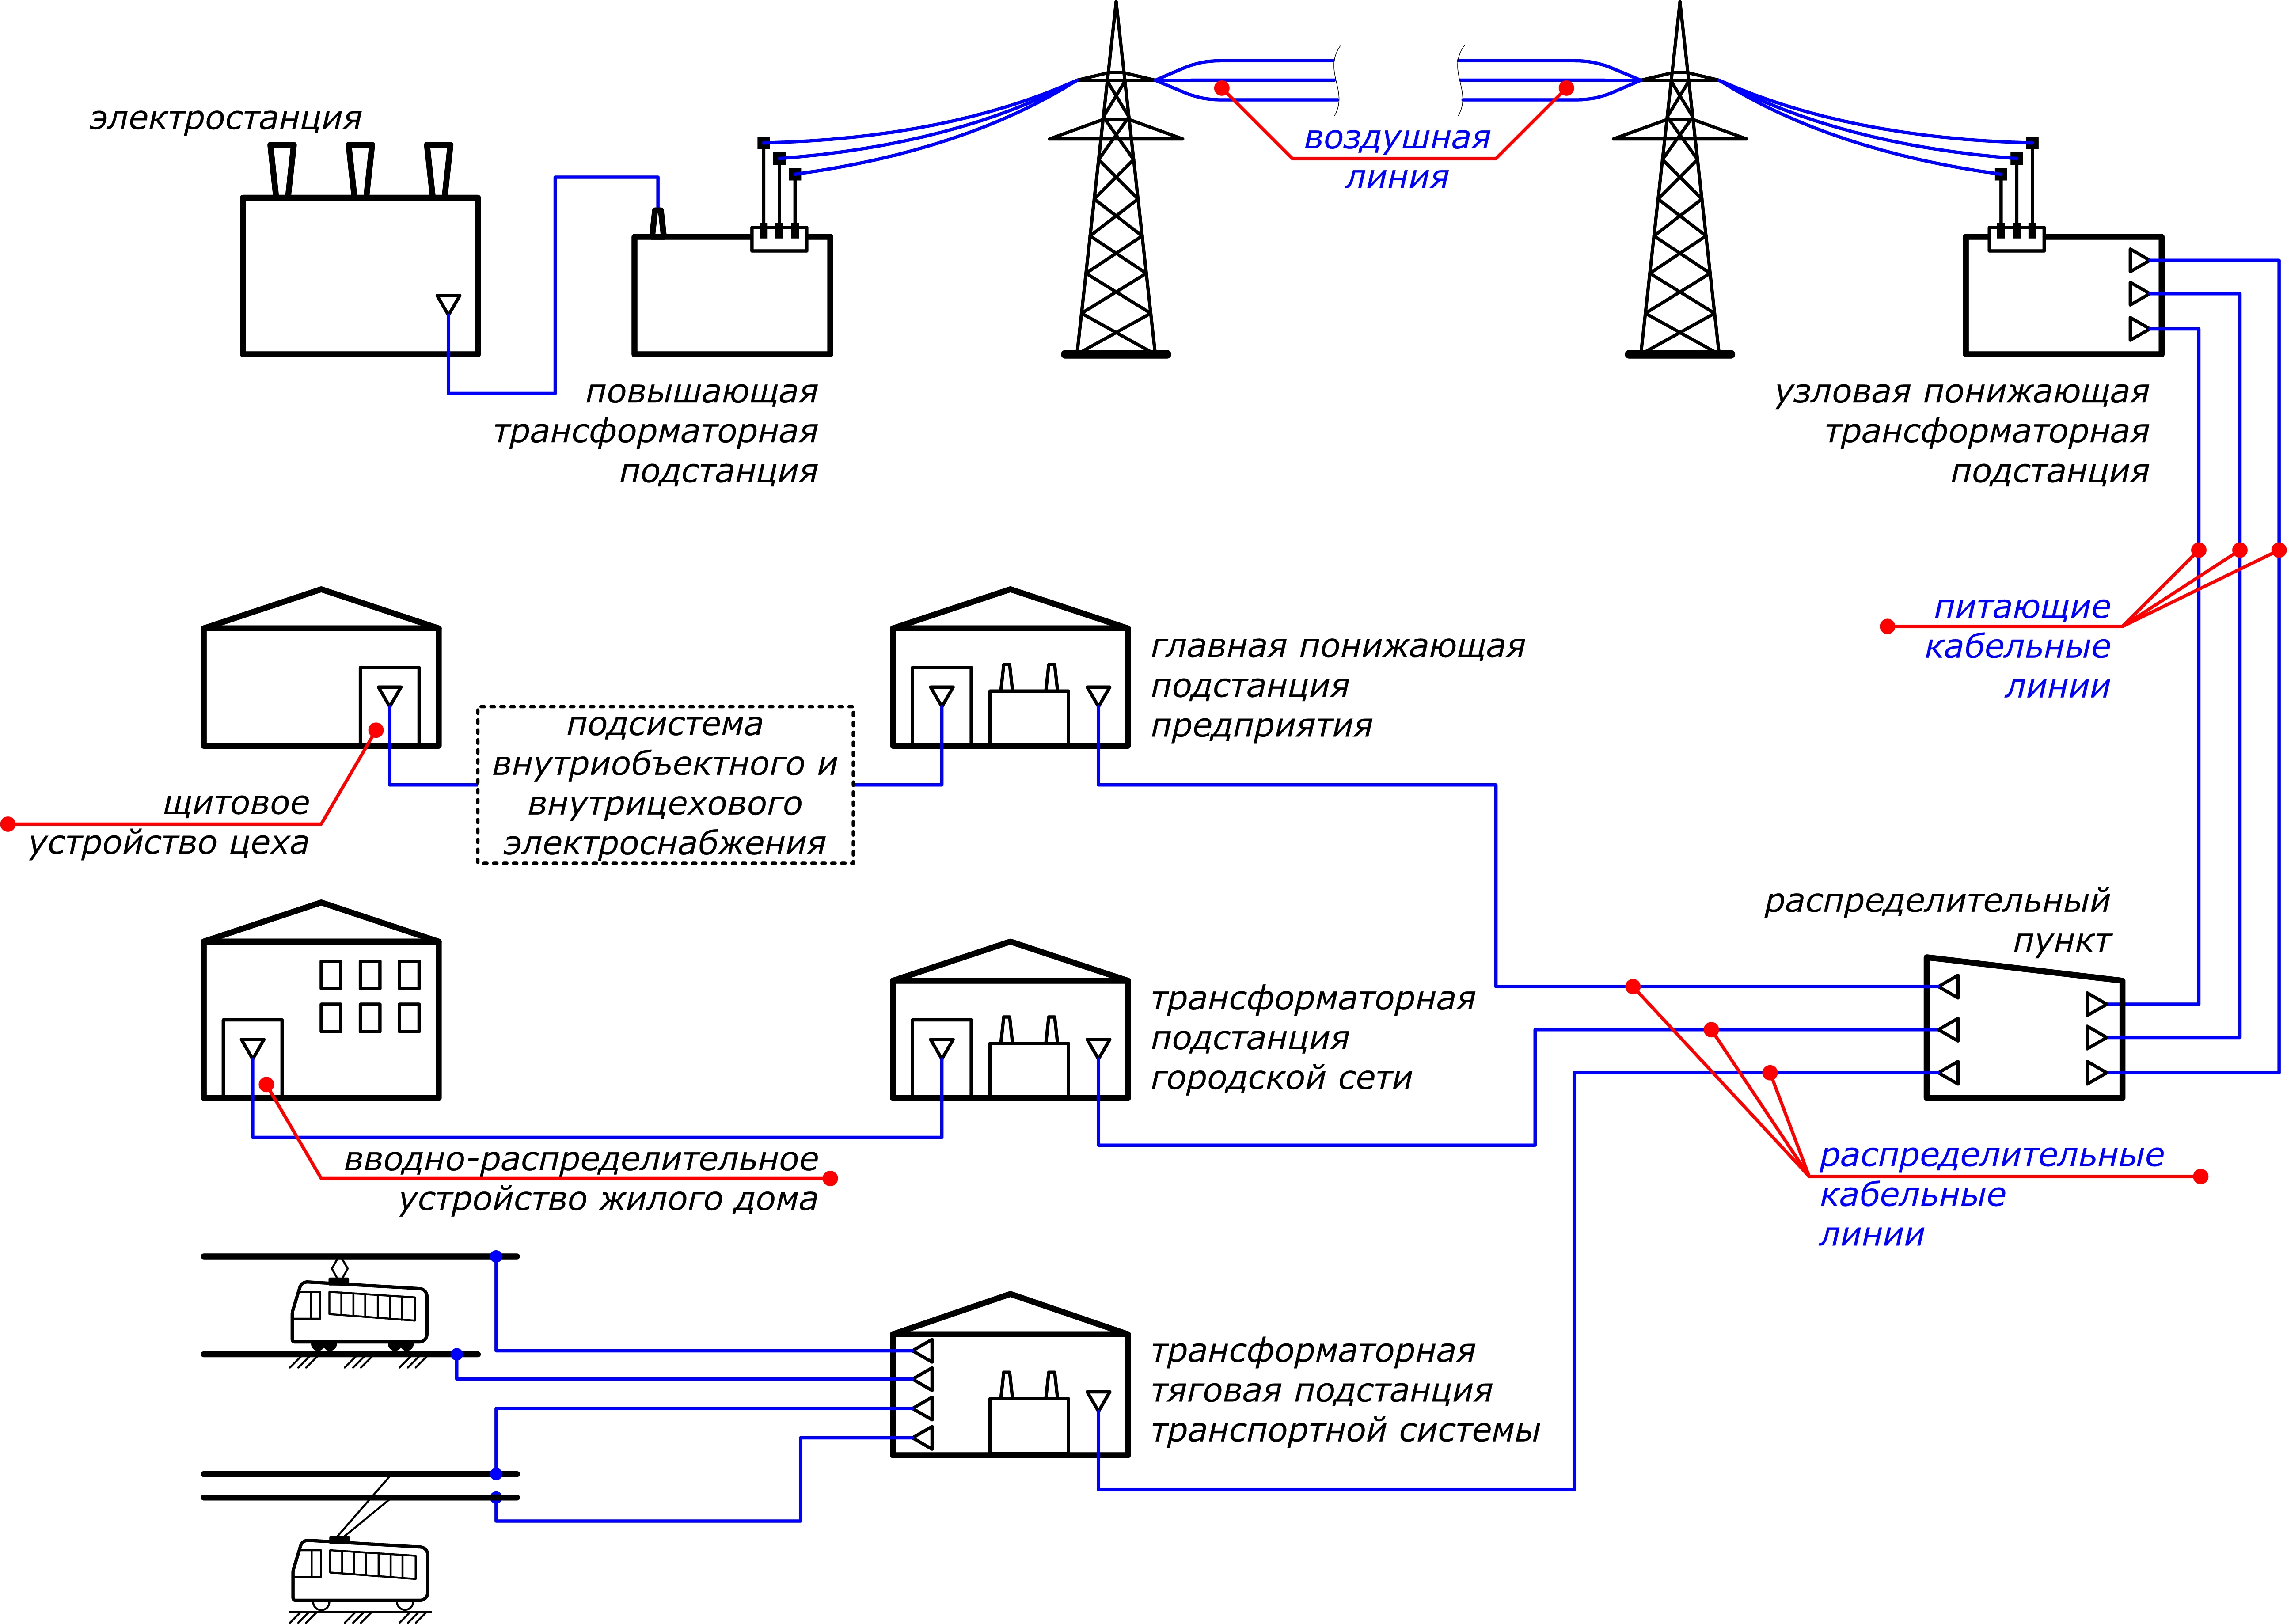 Электричество на новый участок. Схема подключения электроснабжения. Принципиальная схема распределения электроэнергии внутри объекта. Схема подключения потребителя к электрическим сетям. Схема распределения электроэнергии от электростанции к потребителю.